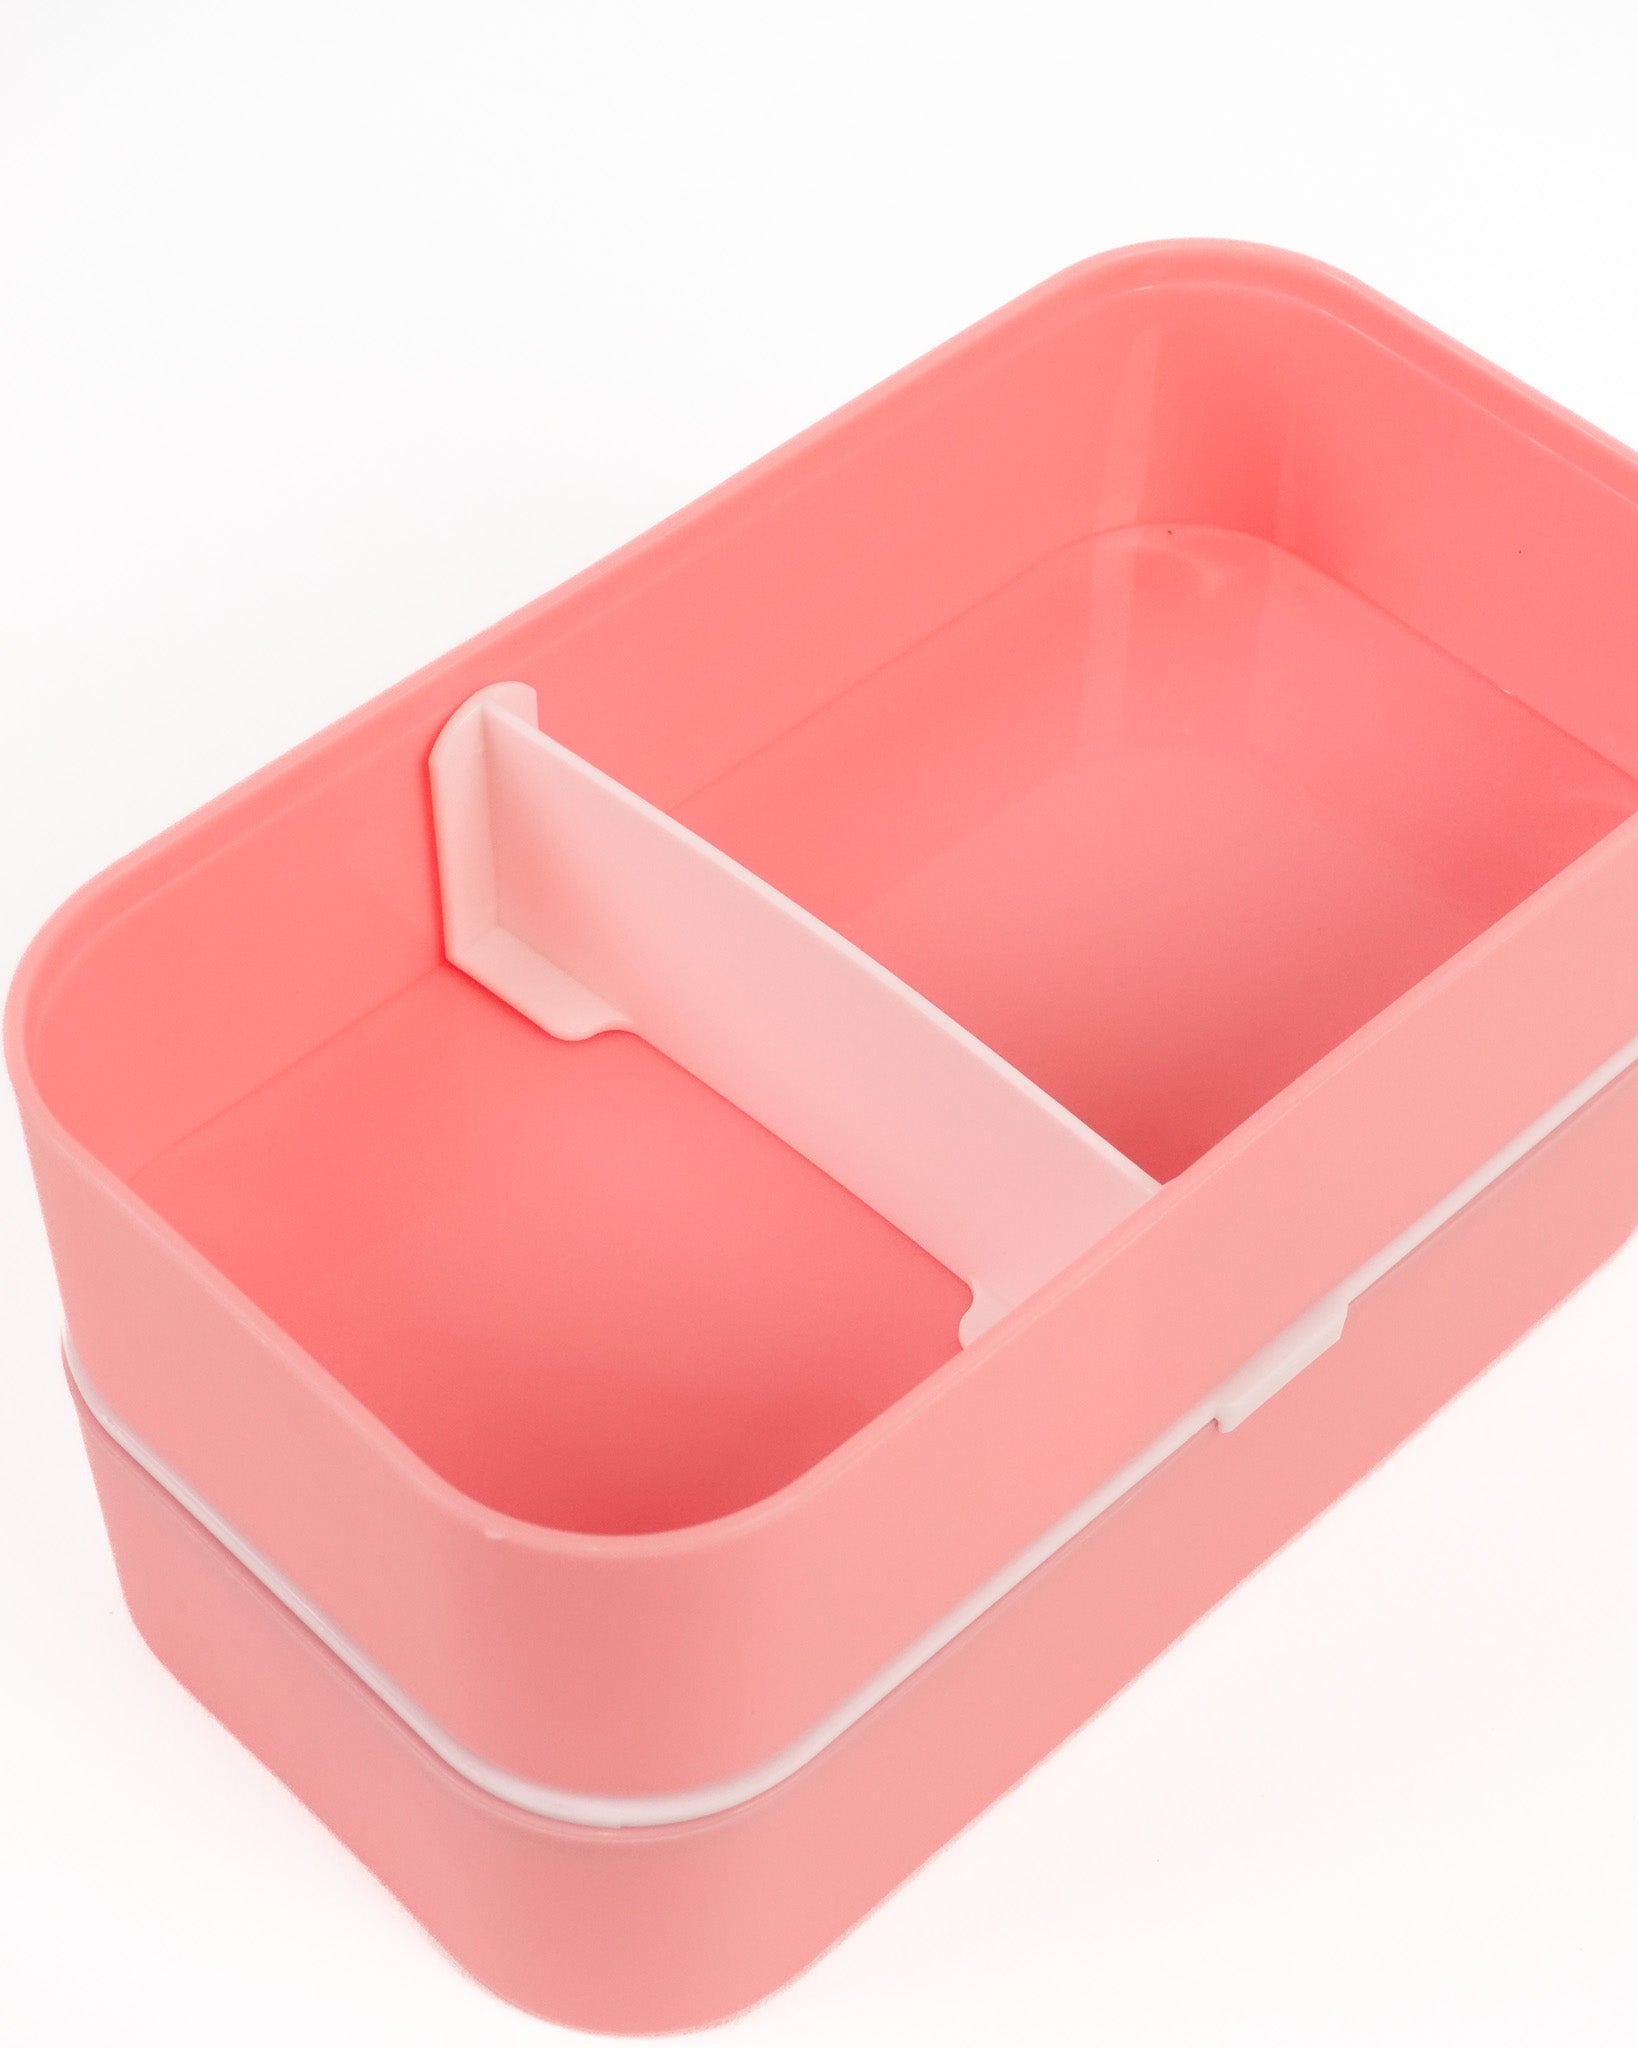 Marshmallow Stackable Bento Box